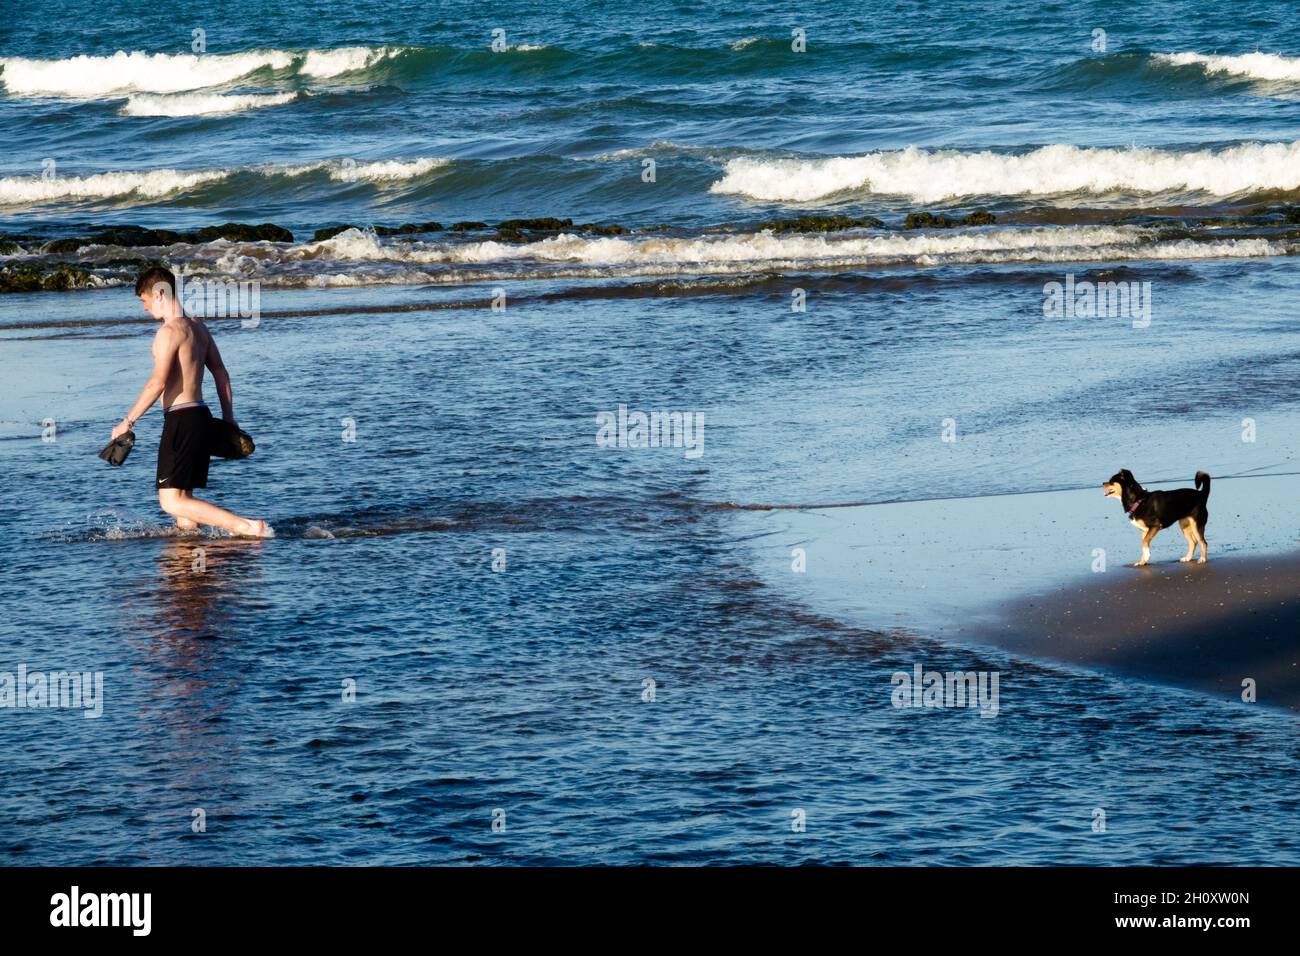 Un jeune homme et un chien de la mer de plage, un chien sur la côte est regarder un homme barboter à travers l'eau, l'homme et le chien Banque D'Images